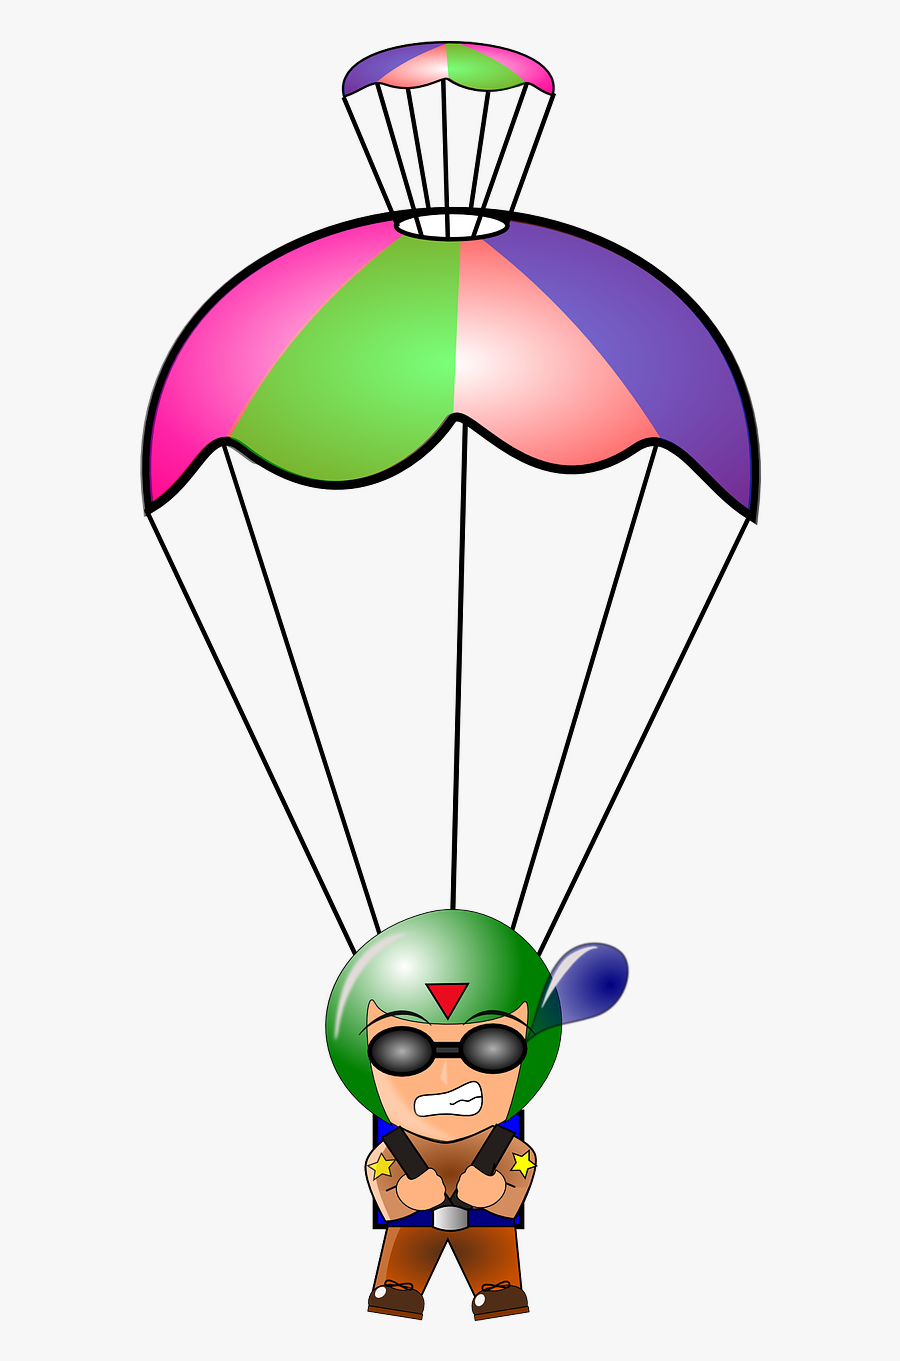 Paratrooper Parachute Parachutist Free Picture - Parachute Clipart, Transparent Clipart